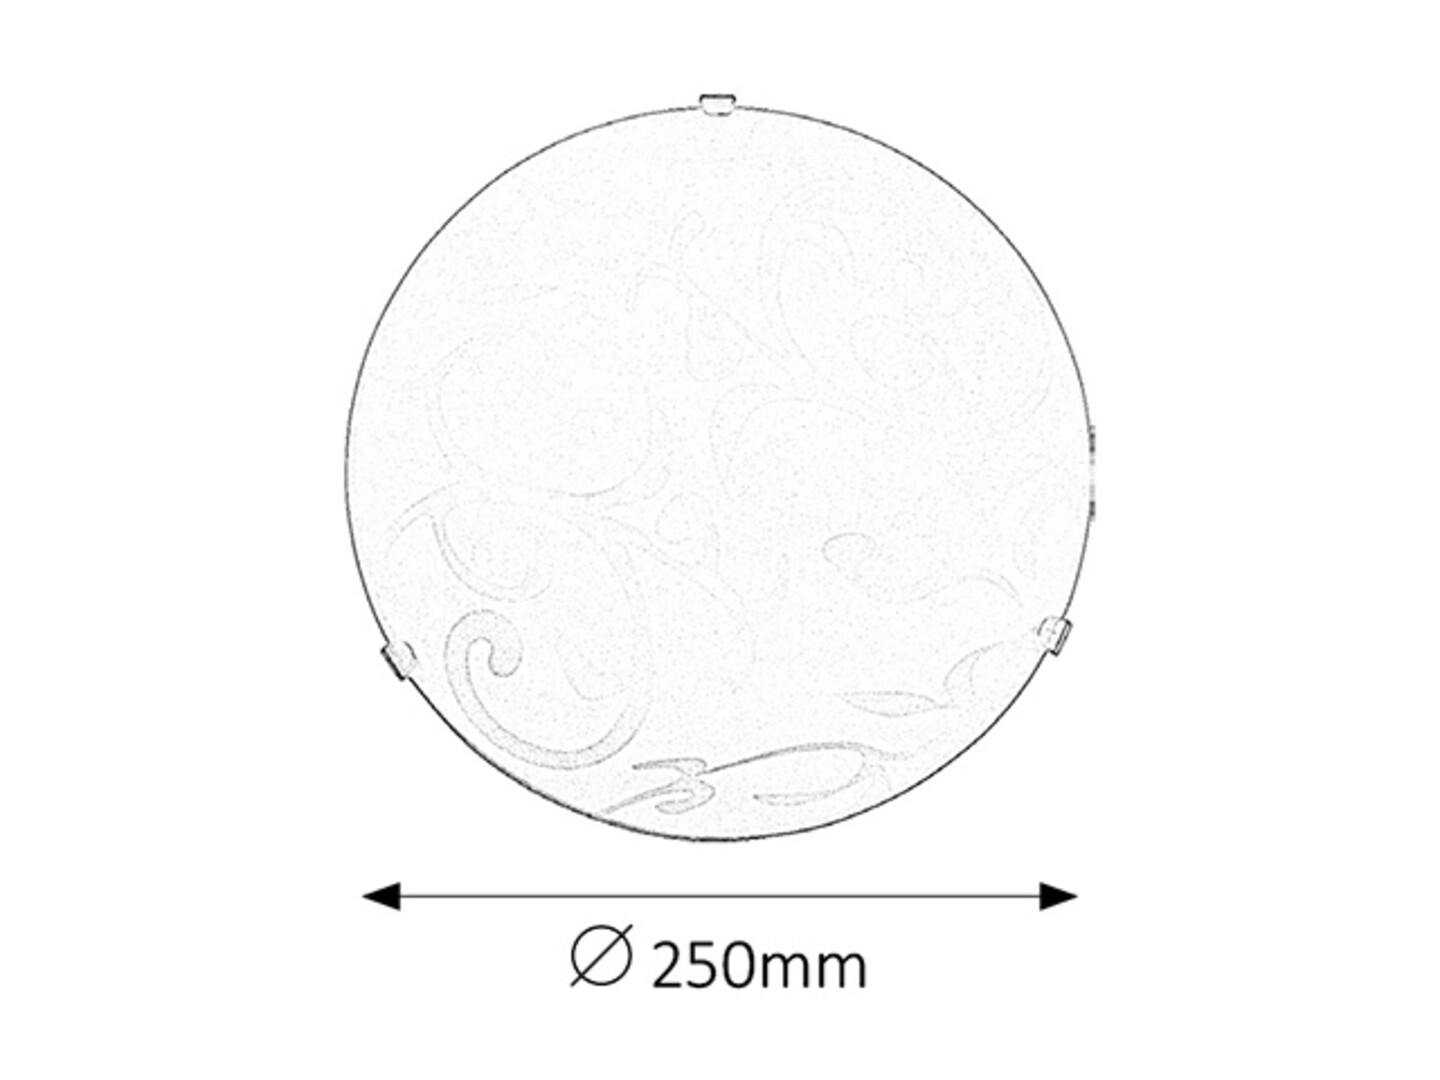 Deckenleuchte 1 Spot Scroll 1845, E27, Metall-Kunststoff, weiß, rund, Standard, ø250mm